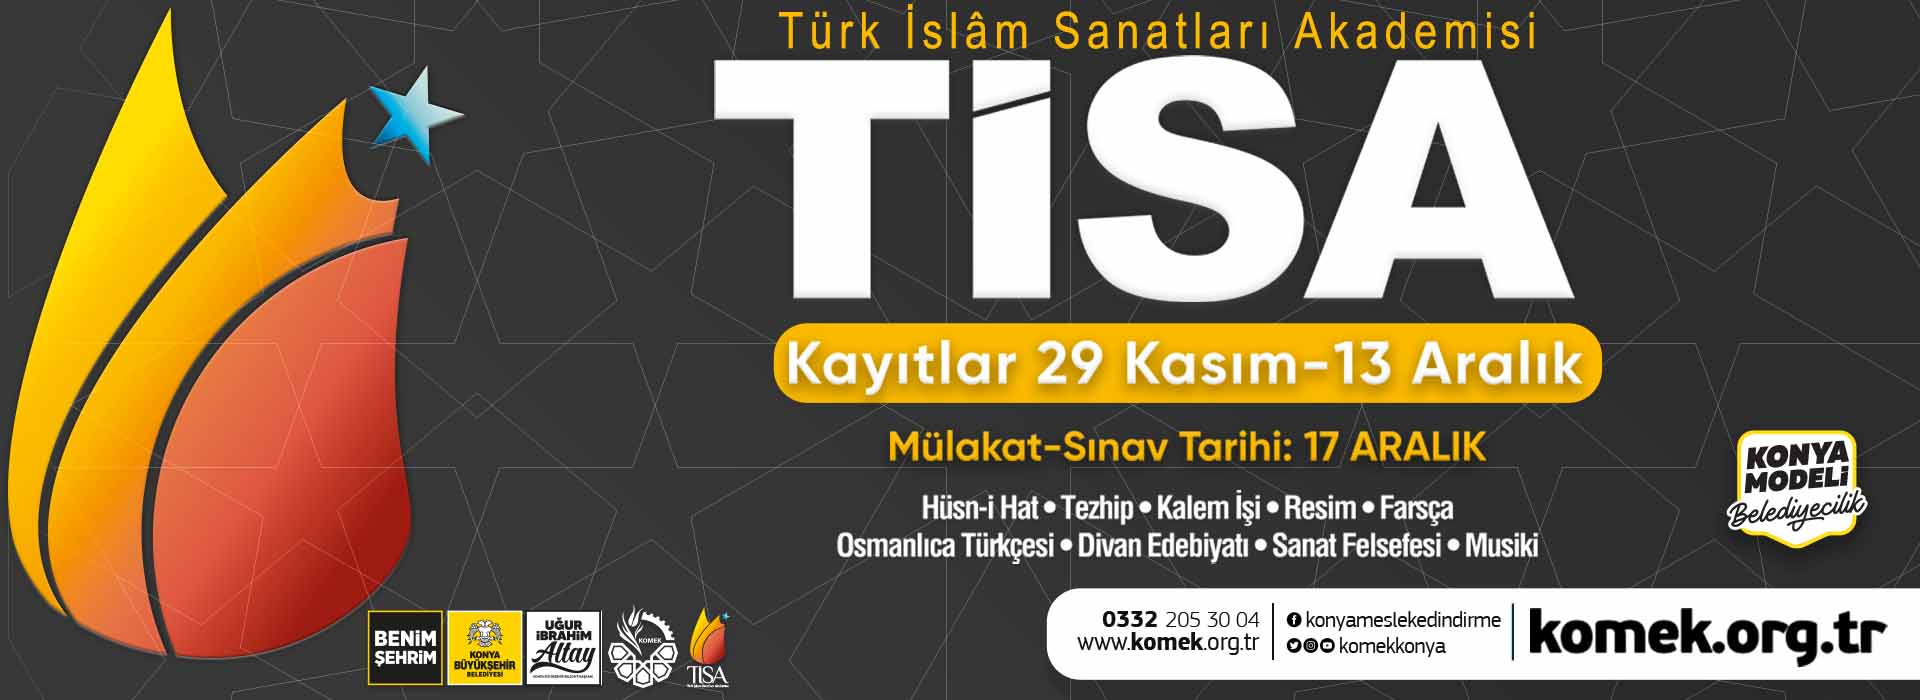 Türk İslam Sanatları (TİSA) Kayıtları Başladı